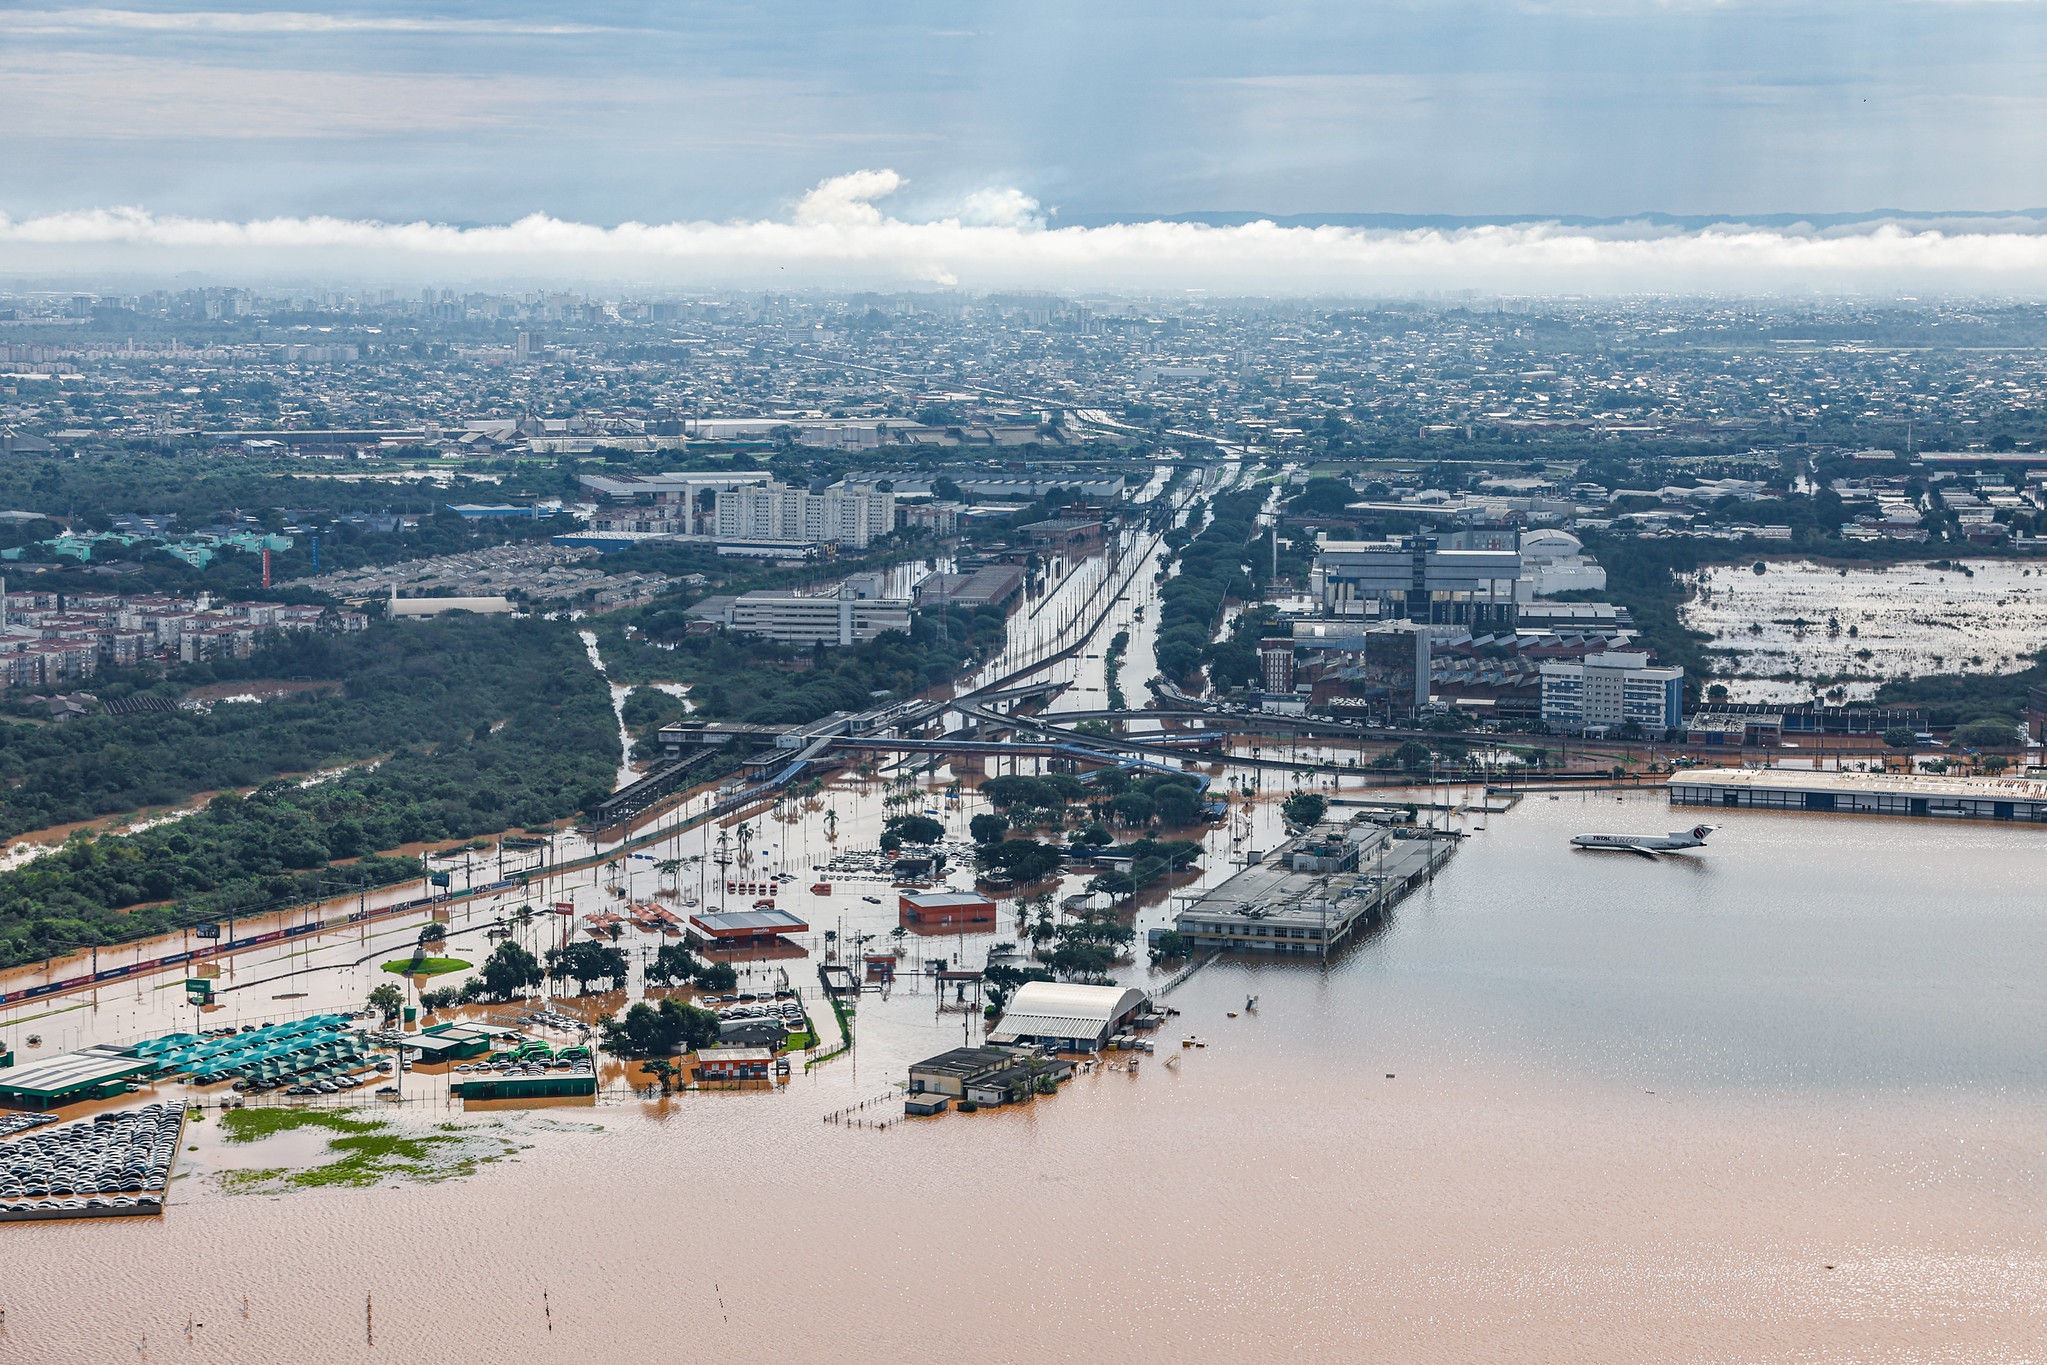 Enchentes e inundações que atigem o Rio Grande do Sul deixaram a cidade de Canoas debaixo d'água